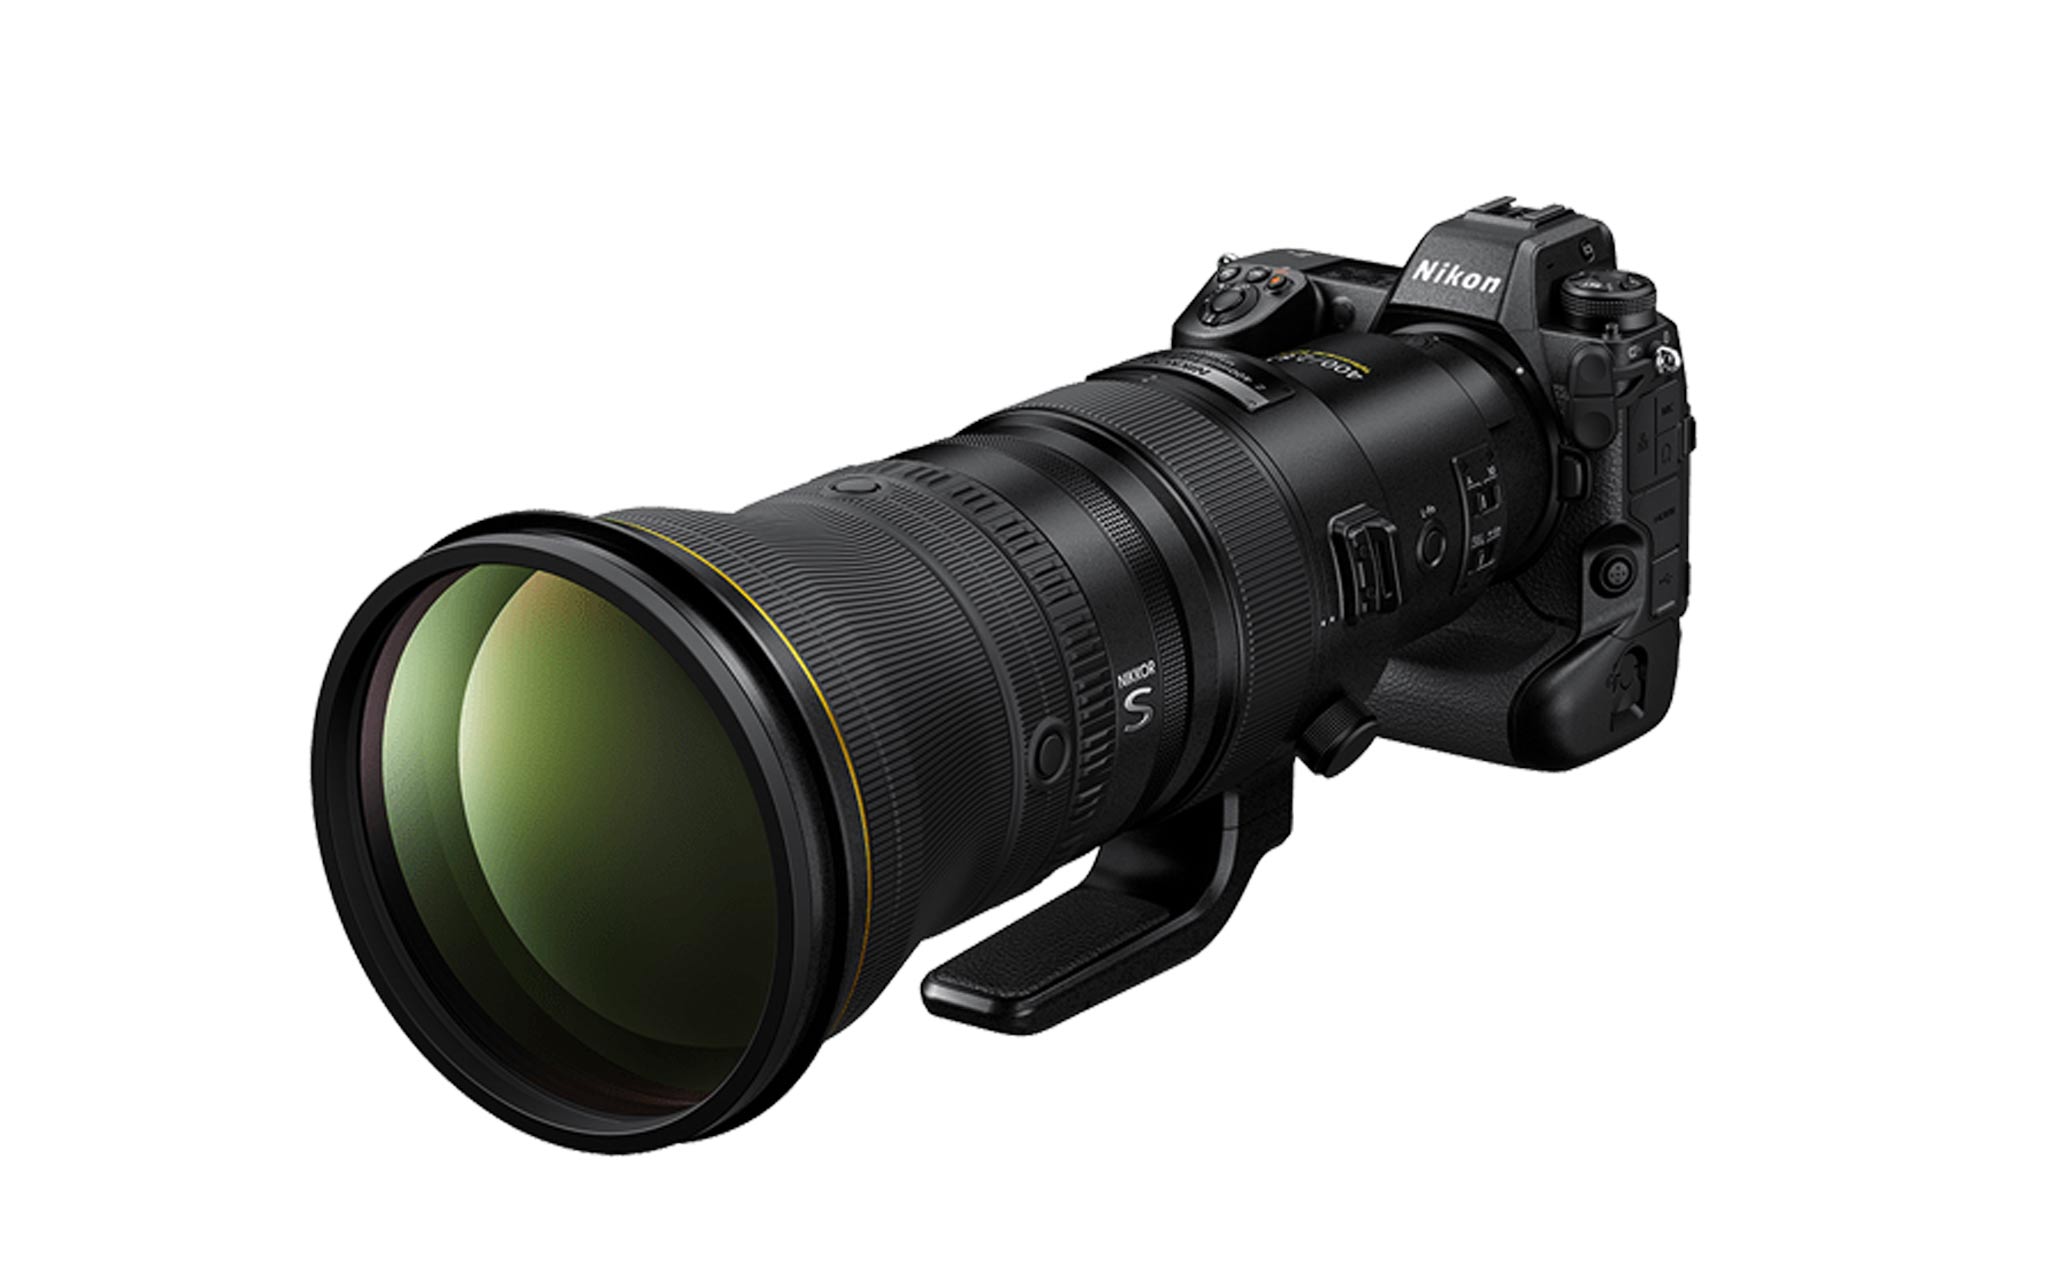 Nikon ra mắt Nikkor Z 400mm F2.8 TC VR S - ống kính thể thao 1 tiêu cự cao cấp của hãng